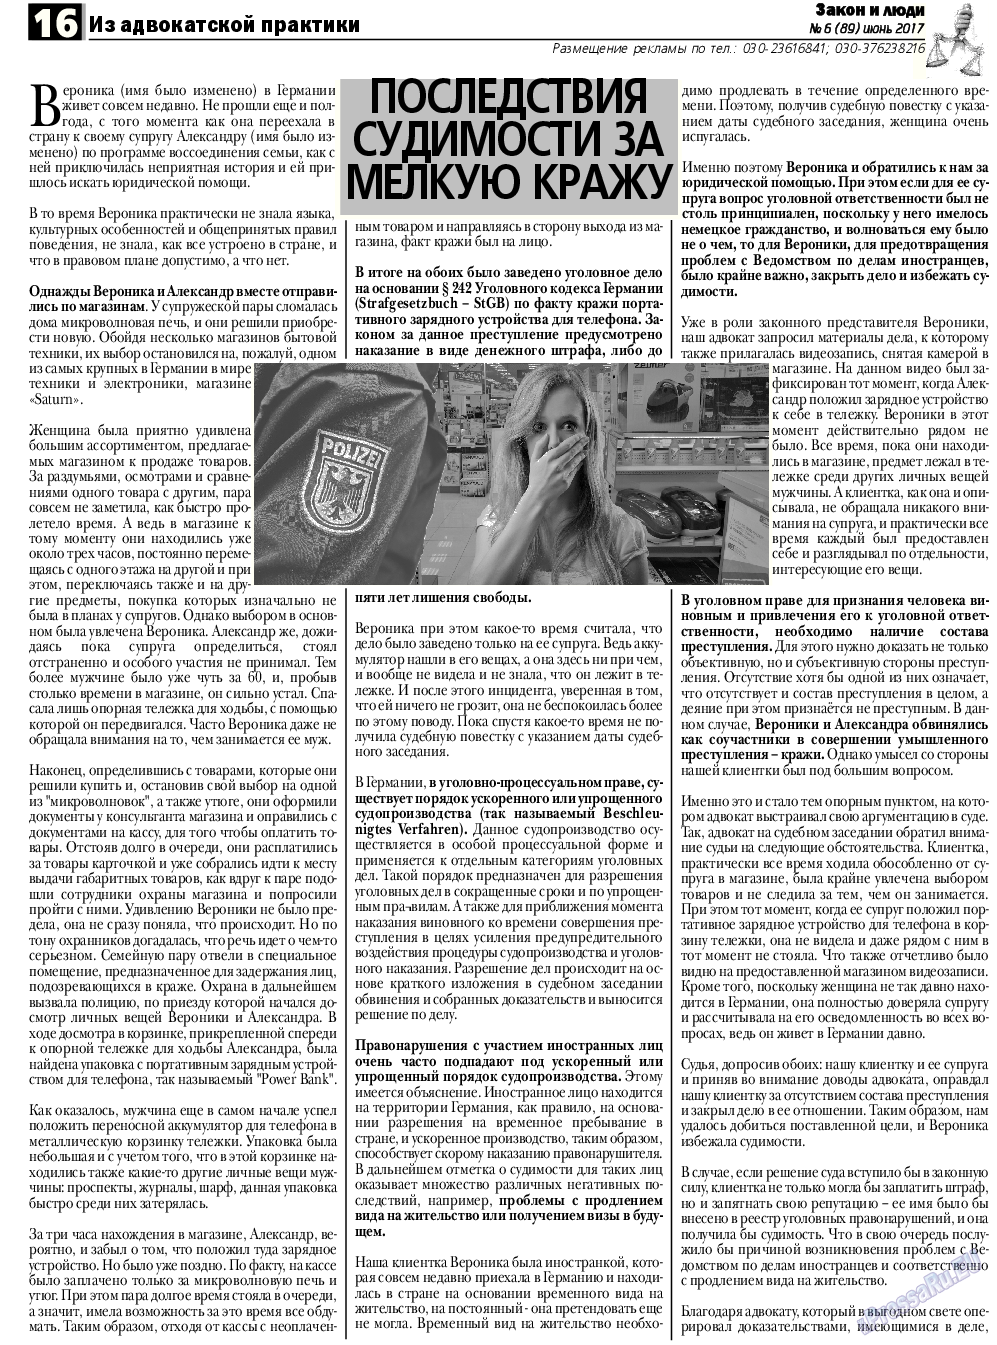 Закон и люди, газета. 2017 №6 стр.16